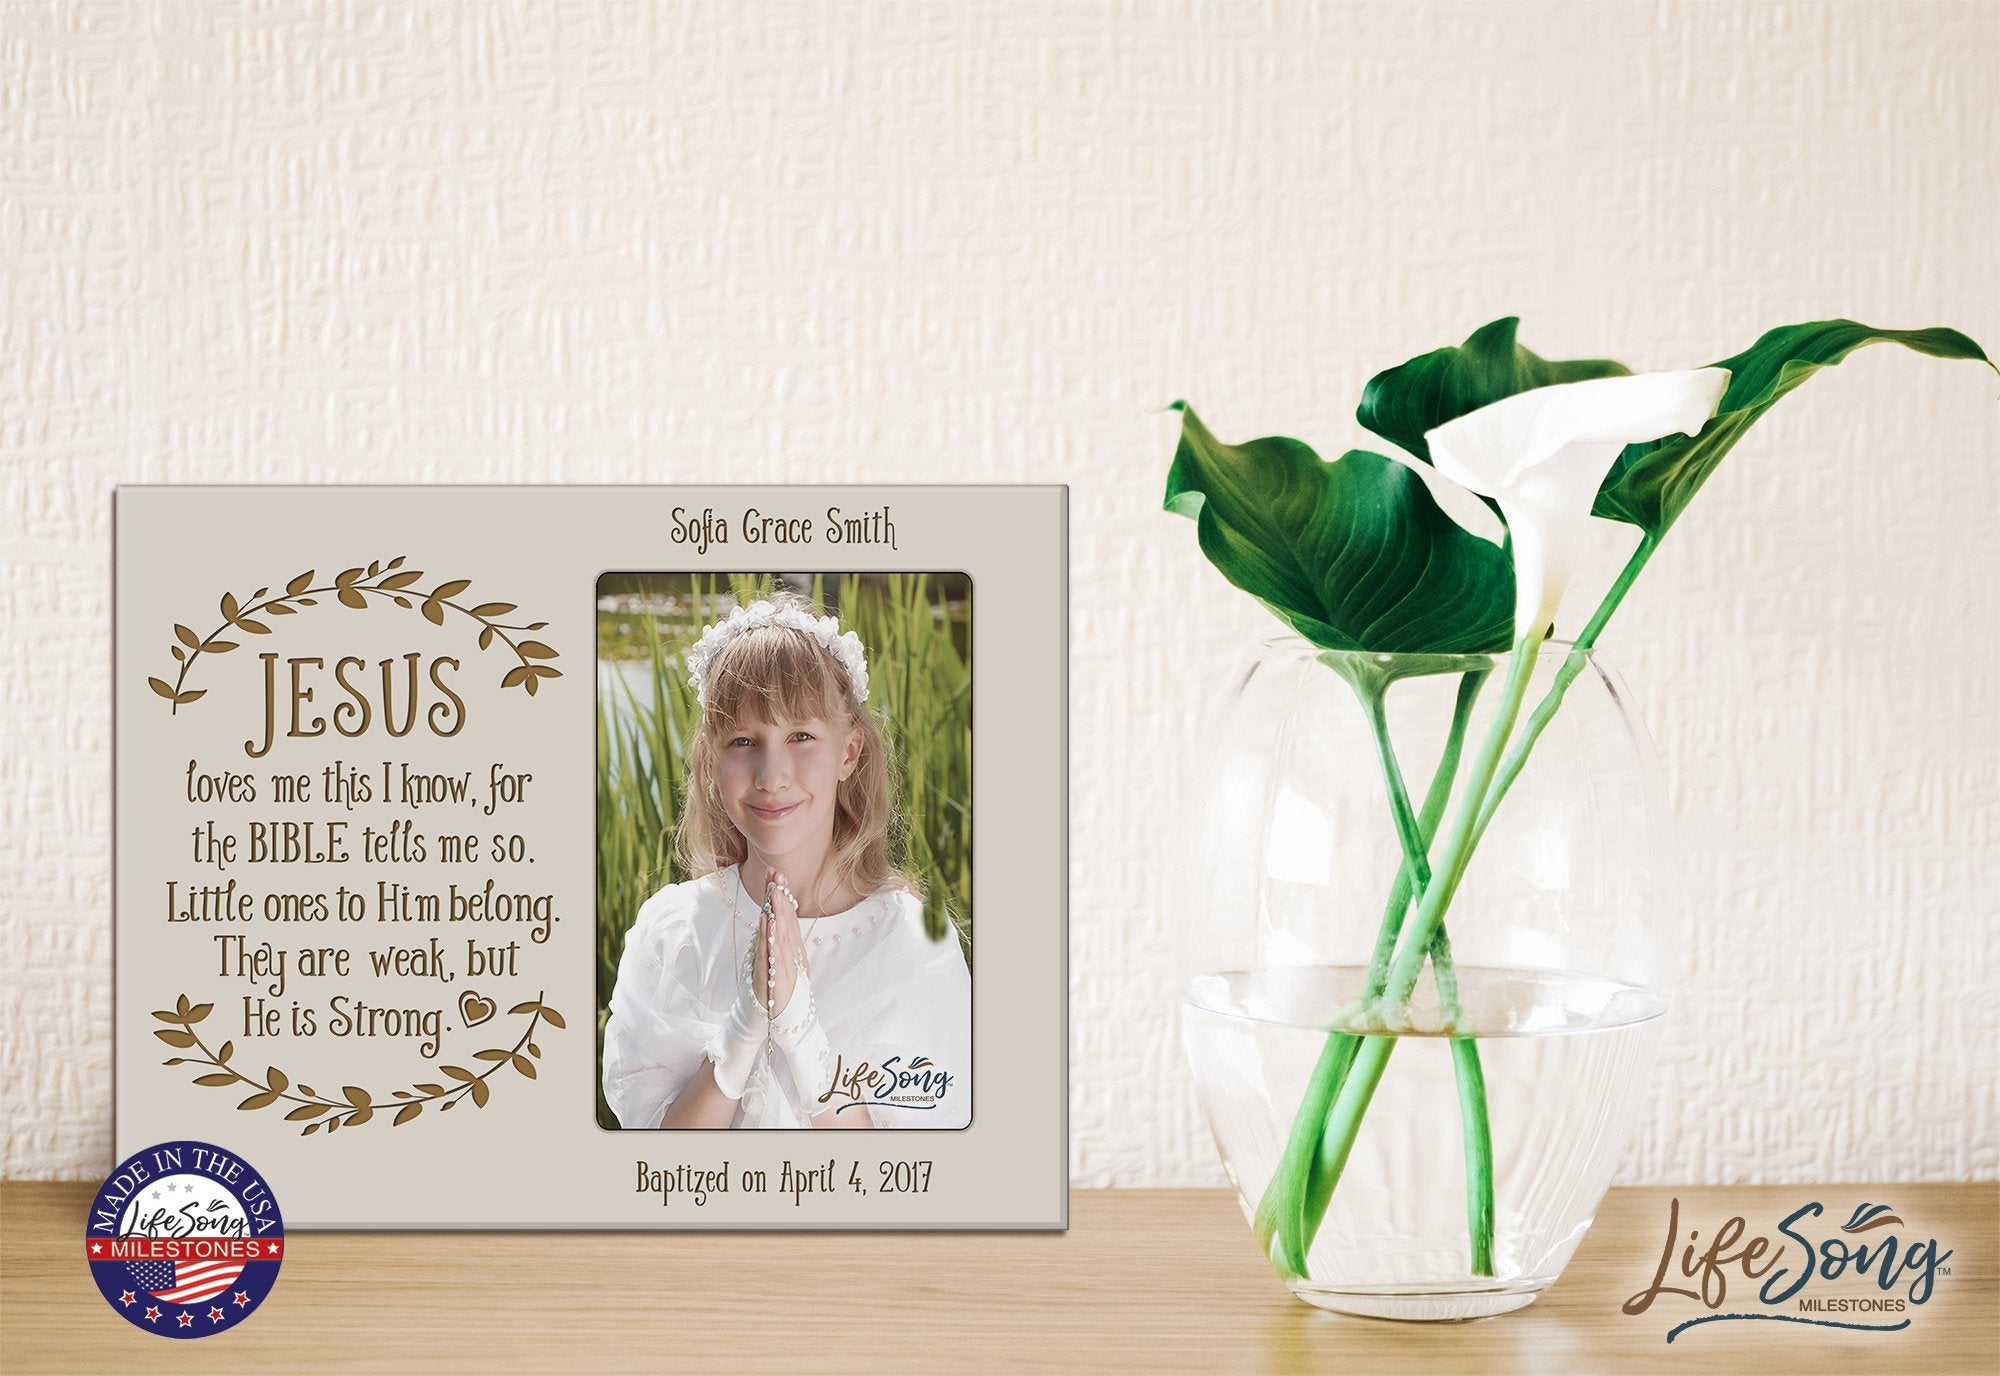 Personalized Baptized Photo Frame - Jesus Loves Me - LifeSong Milestones